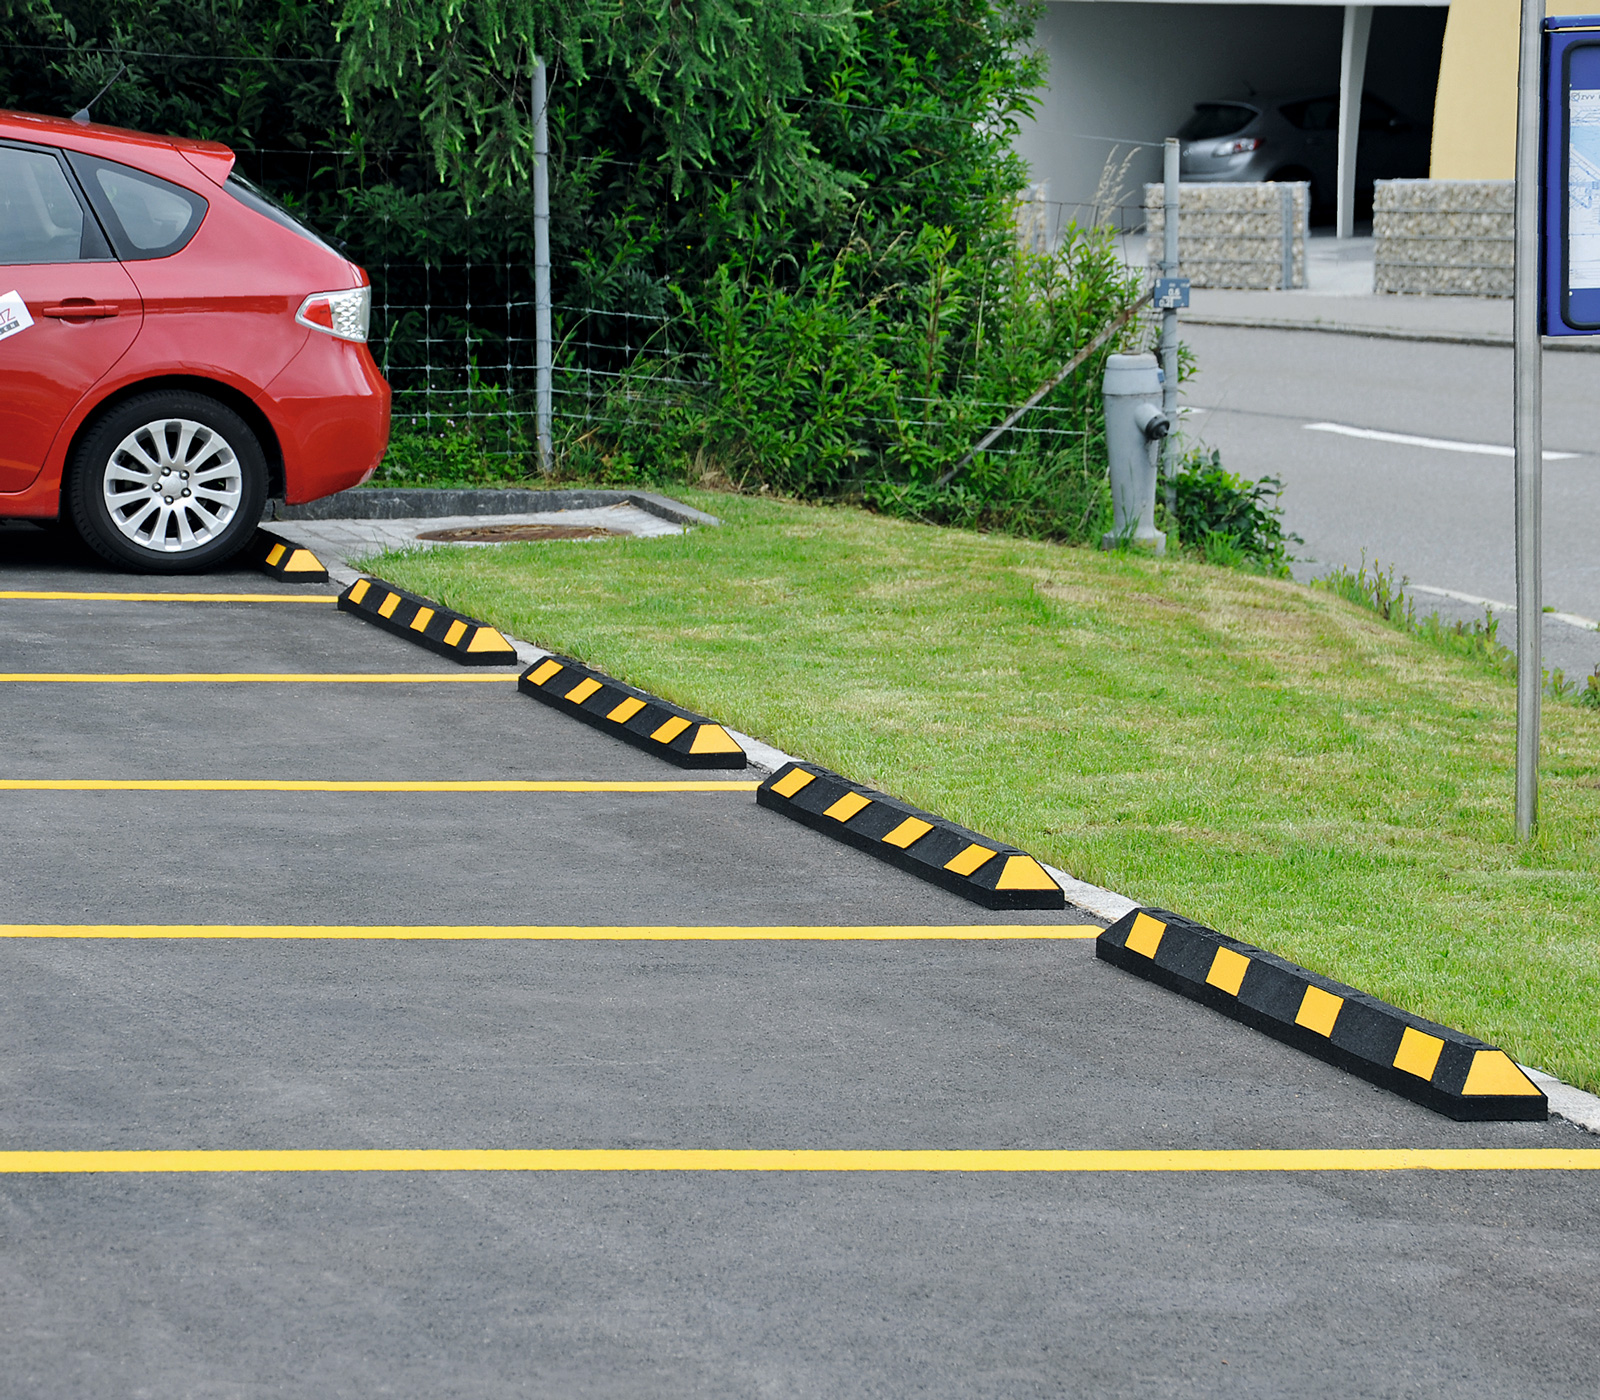 Parkhilfen und Radstopper ➡️ Parkplatzbegrenzung